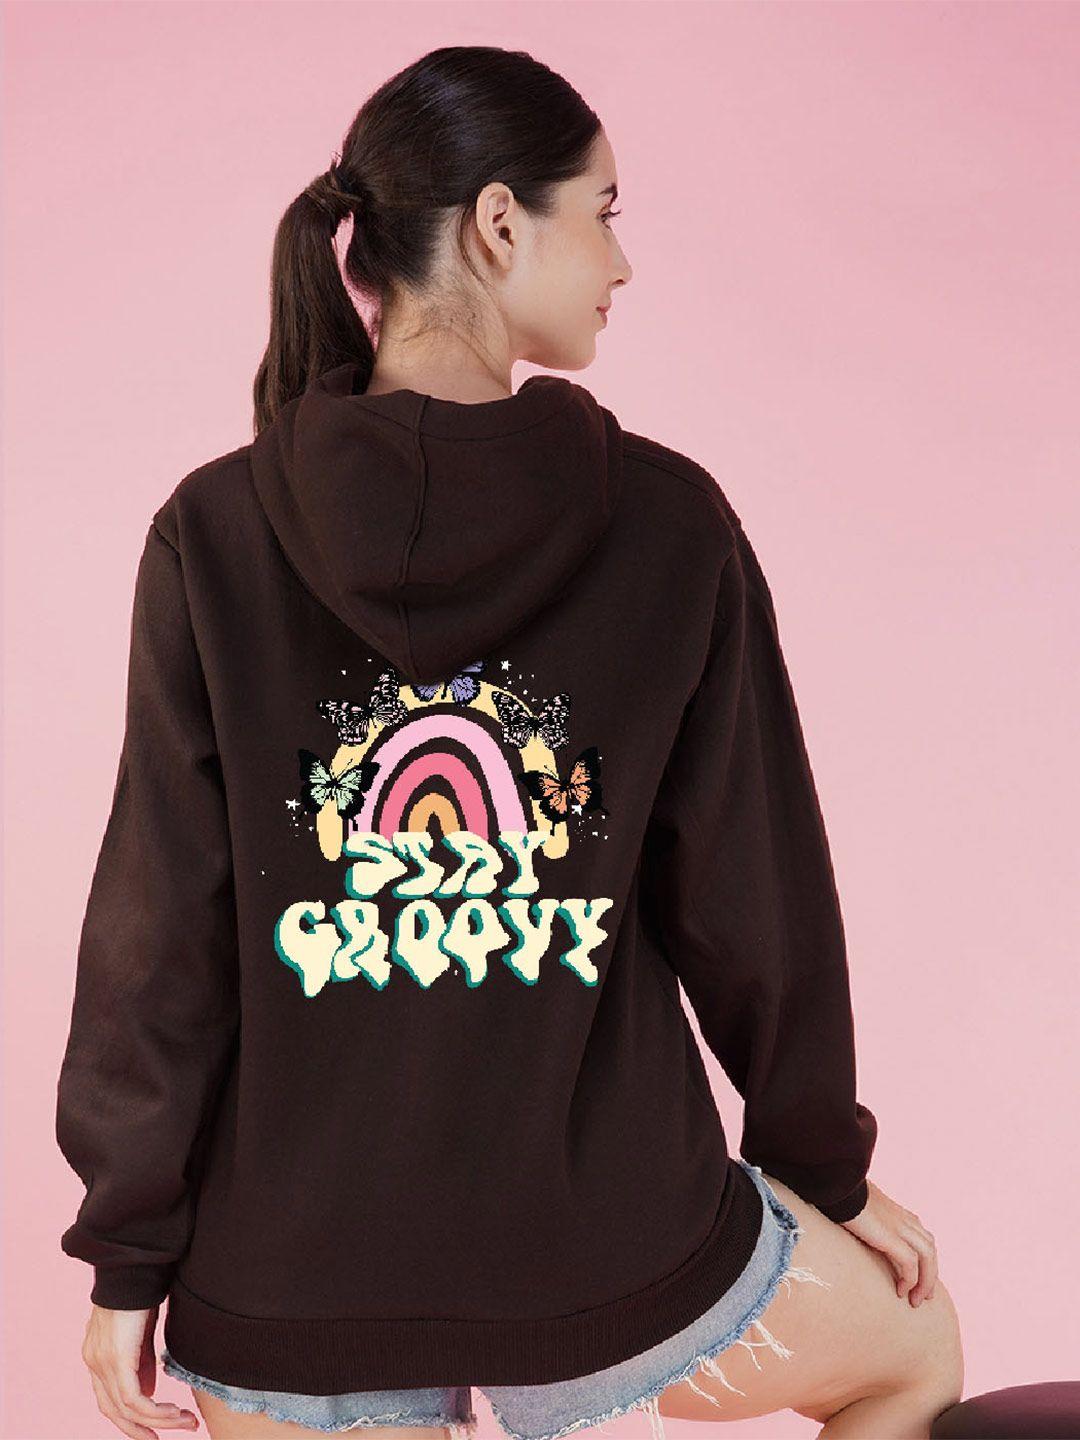 nusyl graphic printed hooded fleece oversized sweatshirt